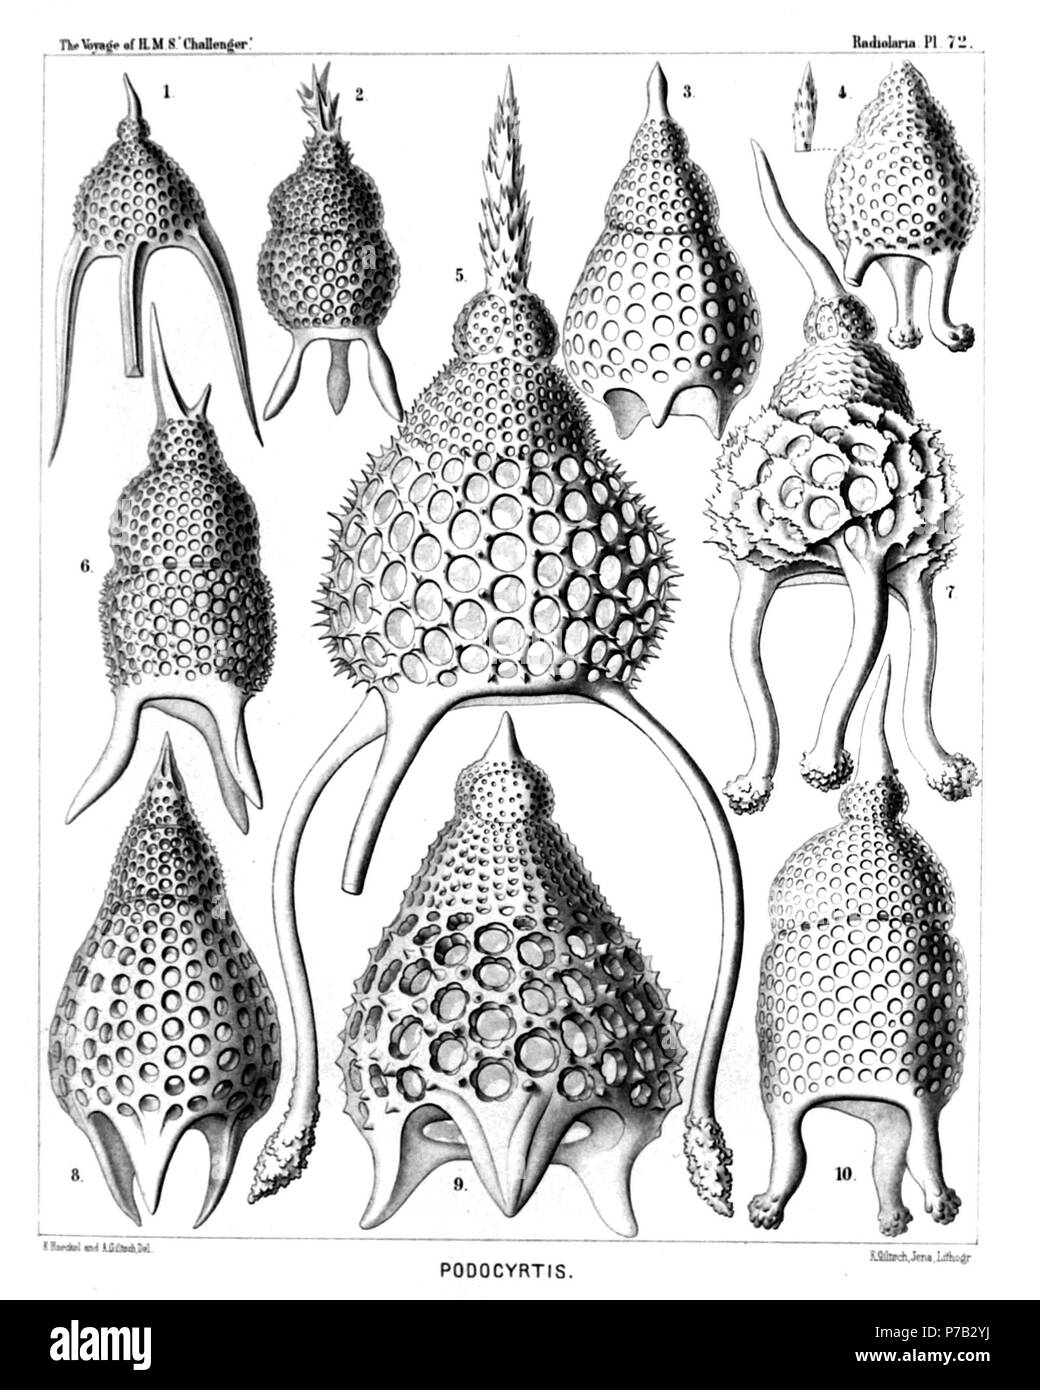 Englisch: Abbildung aus dem Bericht über die radiolaria gesammelt von H.M.S. Challenger während der Jahre 1873-1876. Teil III. Original Beschreibung: Platte 72. Podocyrtida. Durchm. Abb. 1. Podocyrtis prismatica, n. sp., × 300 Abb. 2. Podocyrtis corythaeola, n. sp., × 300 Abb. 3. Podocyrtis lithoconus, n. sp., × 300 Abb. 4. Podocyrtis tripodiscus, n. sp., × 300 Abb. 5. Podocyrtis magnifica, n. sp., 500 Abb. 6. Podocyrtis divergens, n. sp., × 400 Abb. 7. Podocyrtis cristata, n. sp., × 400 Abb. 8. Podocyrtis pedicellaria, n. sp., × 300 Abb. 9. Podocyrtis flosculata, n. sp., 500 Abb. Stockfoto